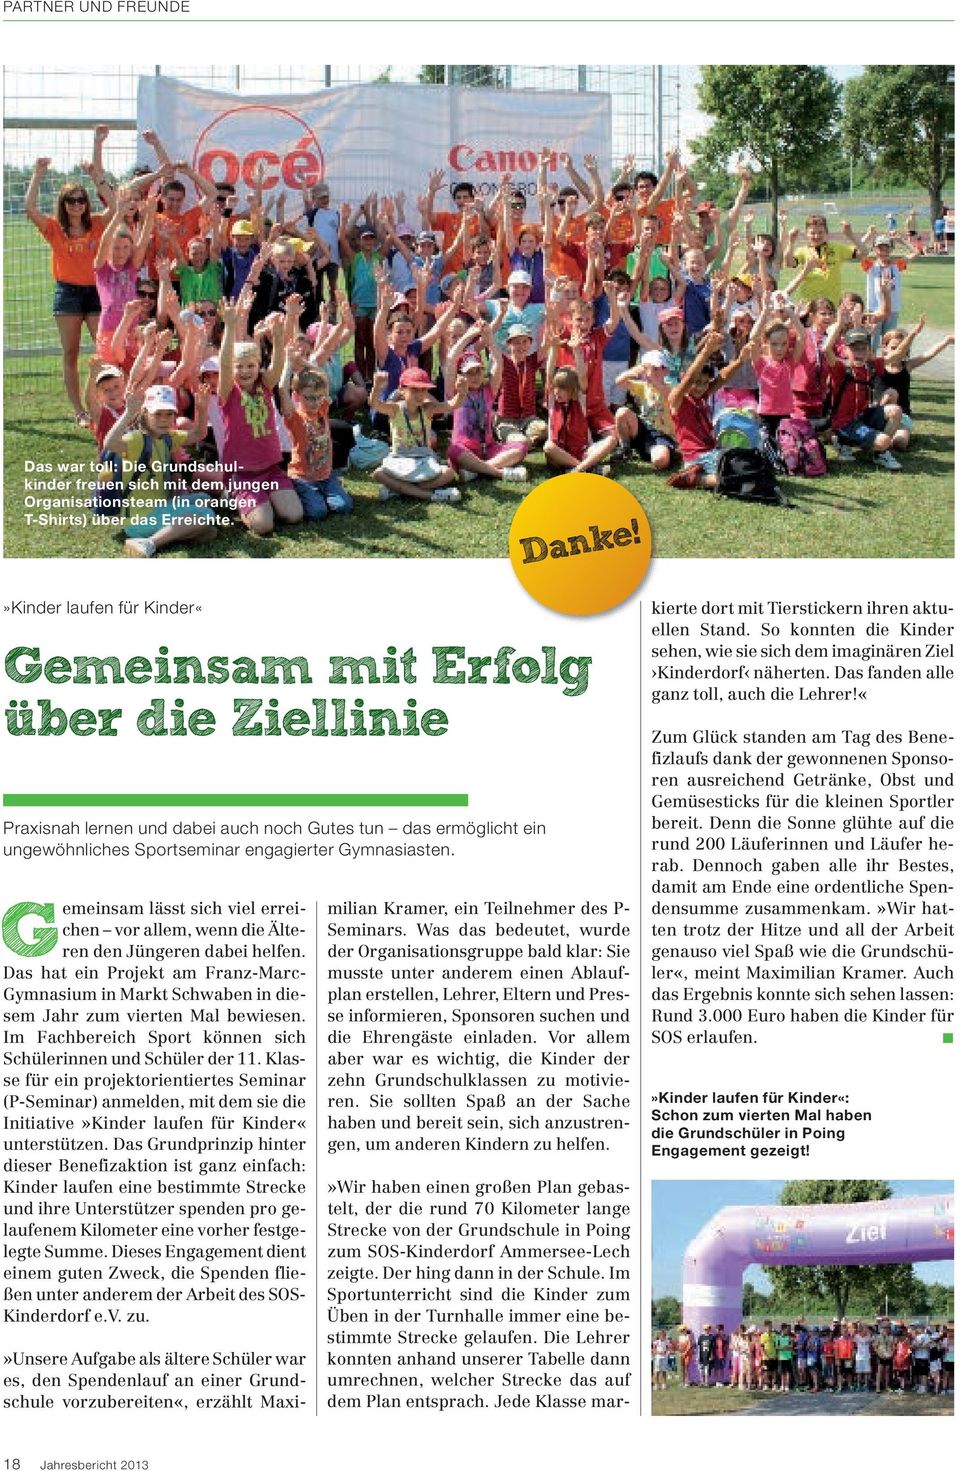 »Wir haben einen großen Plan gebastelt, der die rund 70 Kilometer lange Strecke von der Grundschule in Poing zum SOS-Kinderdorf Ammersee-Lech zeigte. Der hing dann in der Schule.